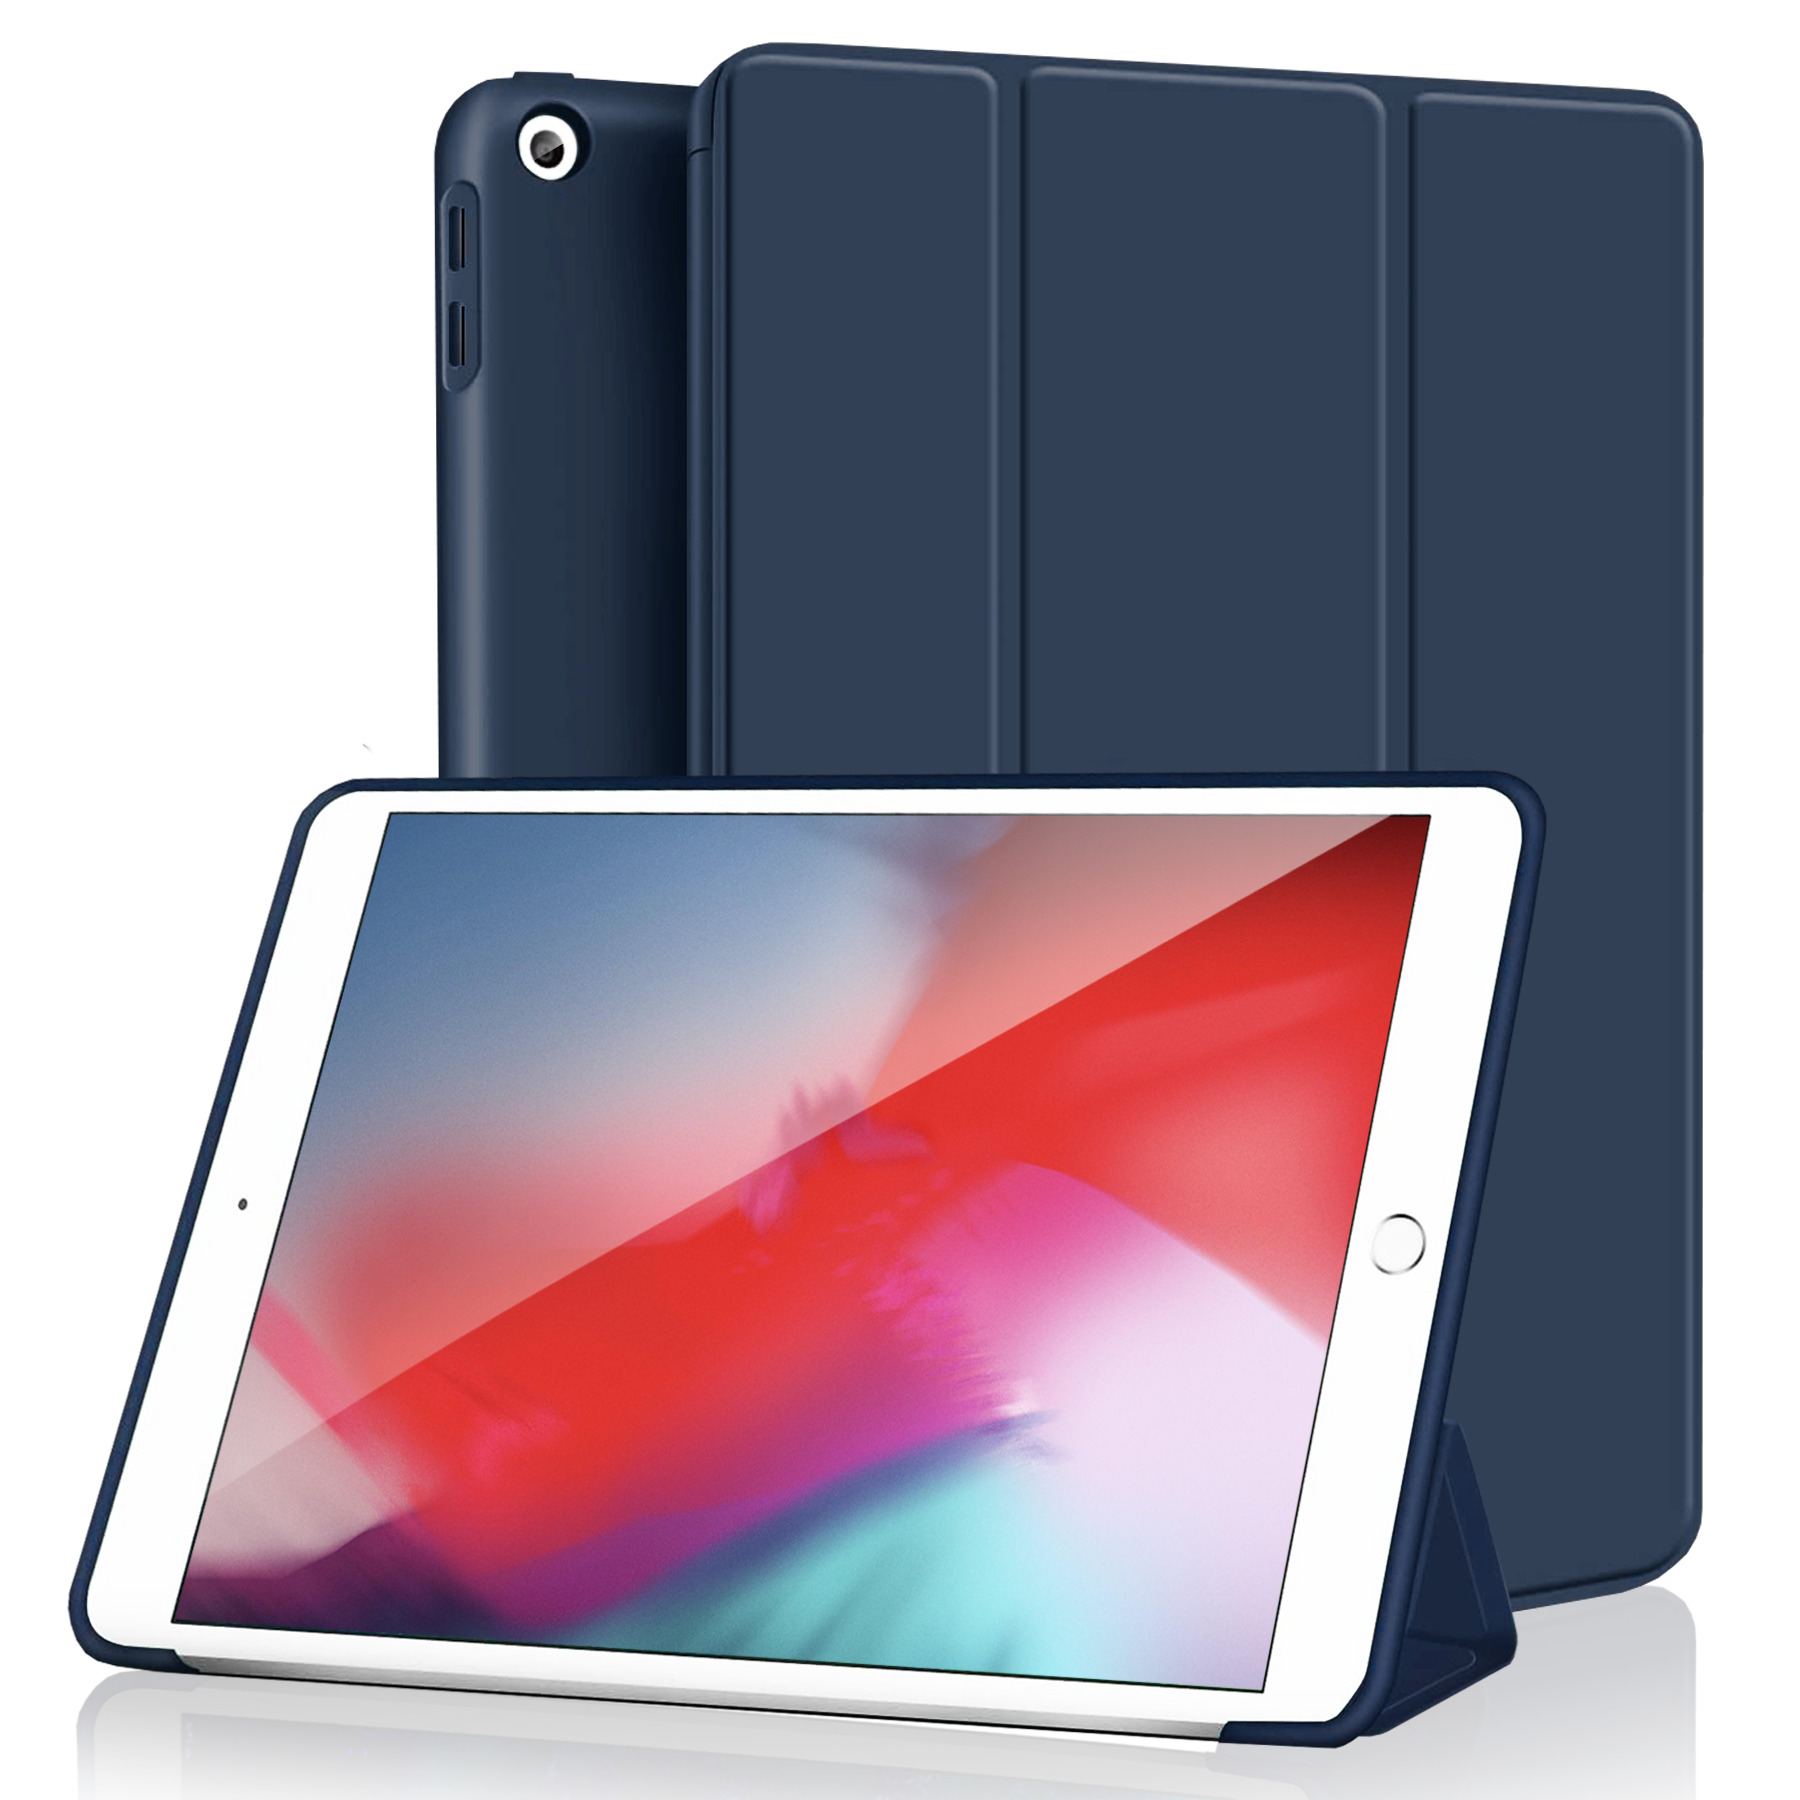 Чехол для планшета Apple Smart Cover для iPad Mini Cactus (MXTG2ZM/A) - купить чехол для планшета ЭПЛ Smart Cover для iPad Mini Cactus (MXTG2ZM/A) по выгодной цене в интернет-магазине